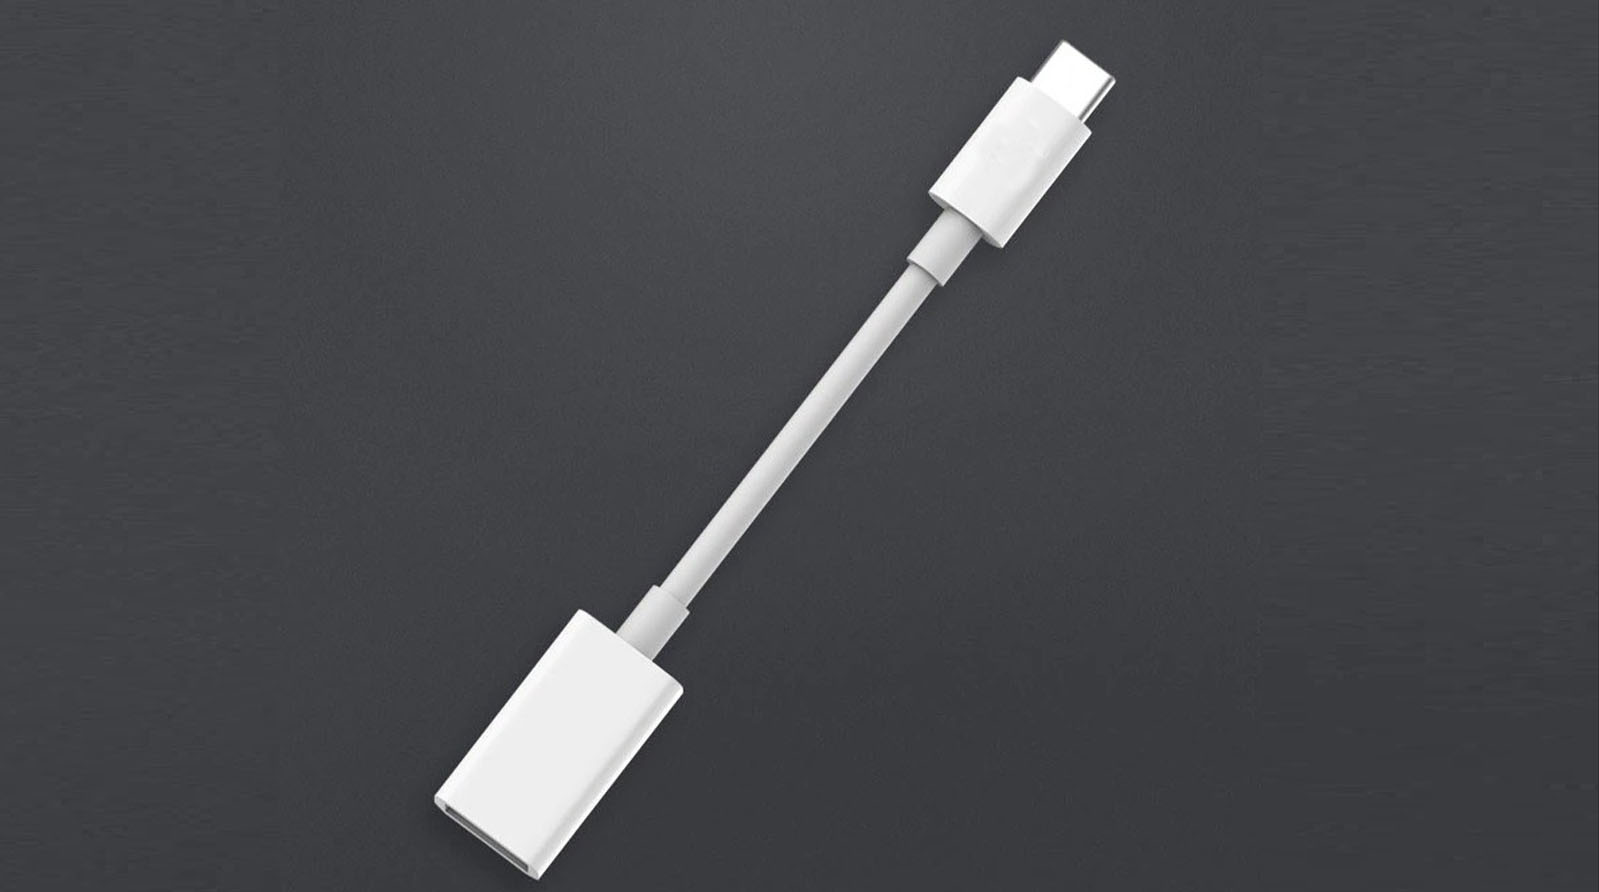 Оригинальный Apple USB-C to USB Adapter (MJ1M2)